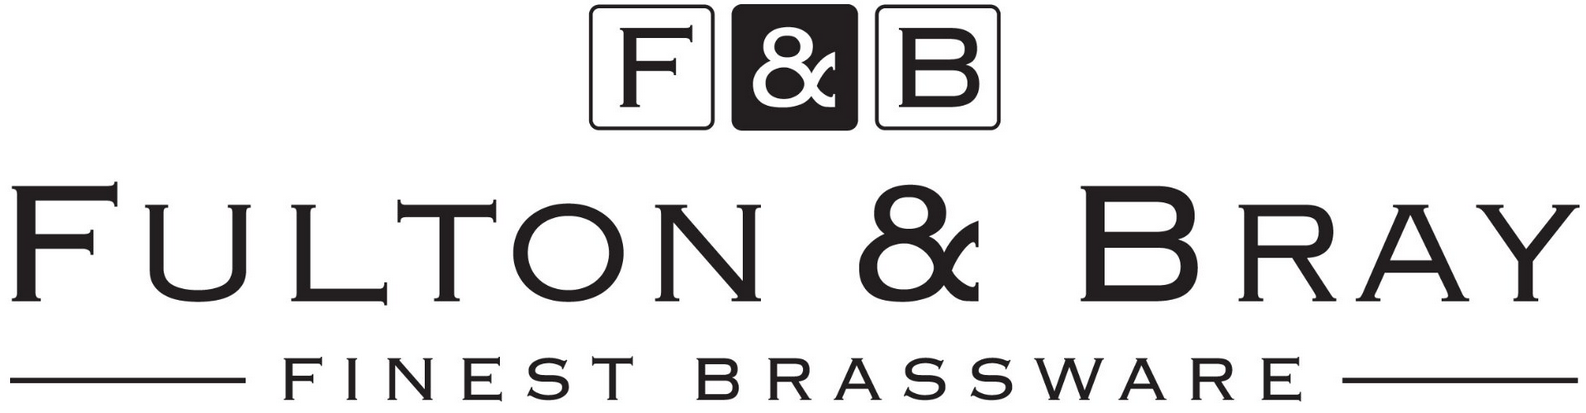 FULTON & BRAY - Finest Brassware 